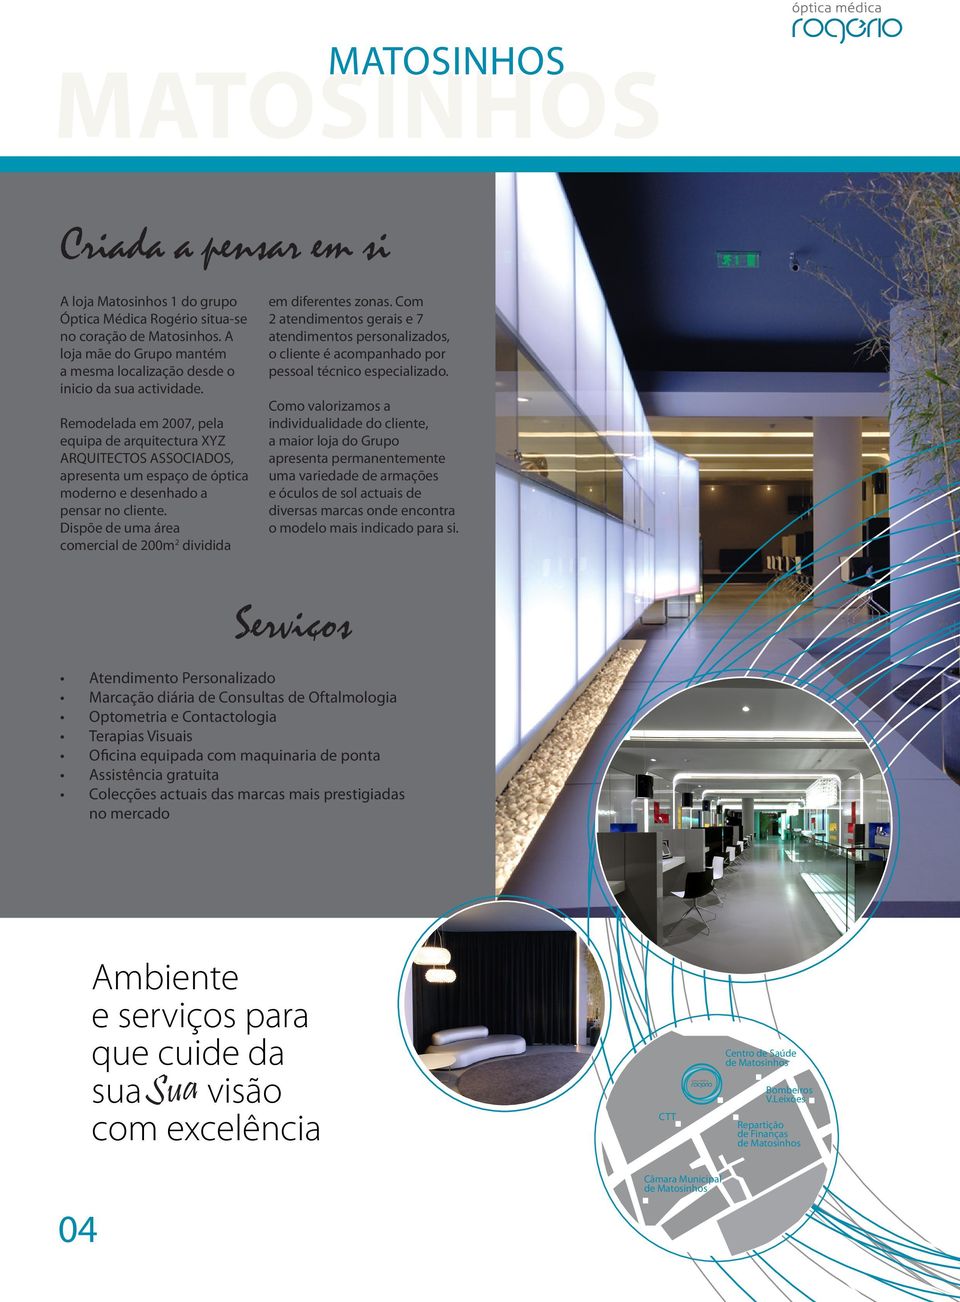 Remodelada em 2007, pela equipa de arquitectura XYZ ARQUITECTOS ASSOCIADOS, apresenta um espaço de óptica moderno e desenhado a pensar no cliente.